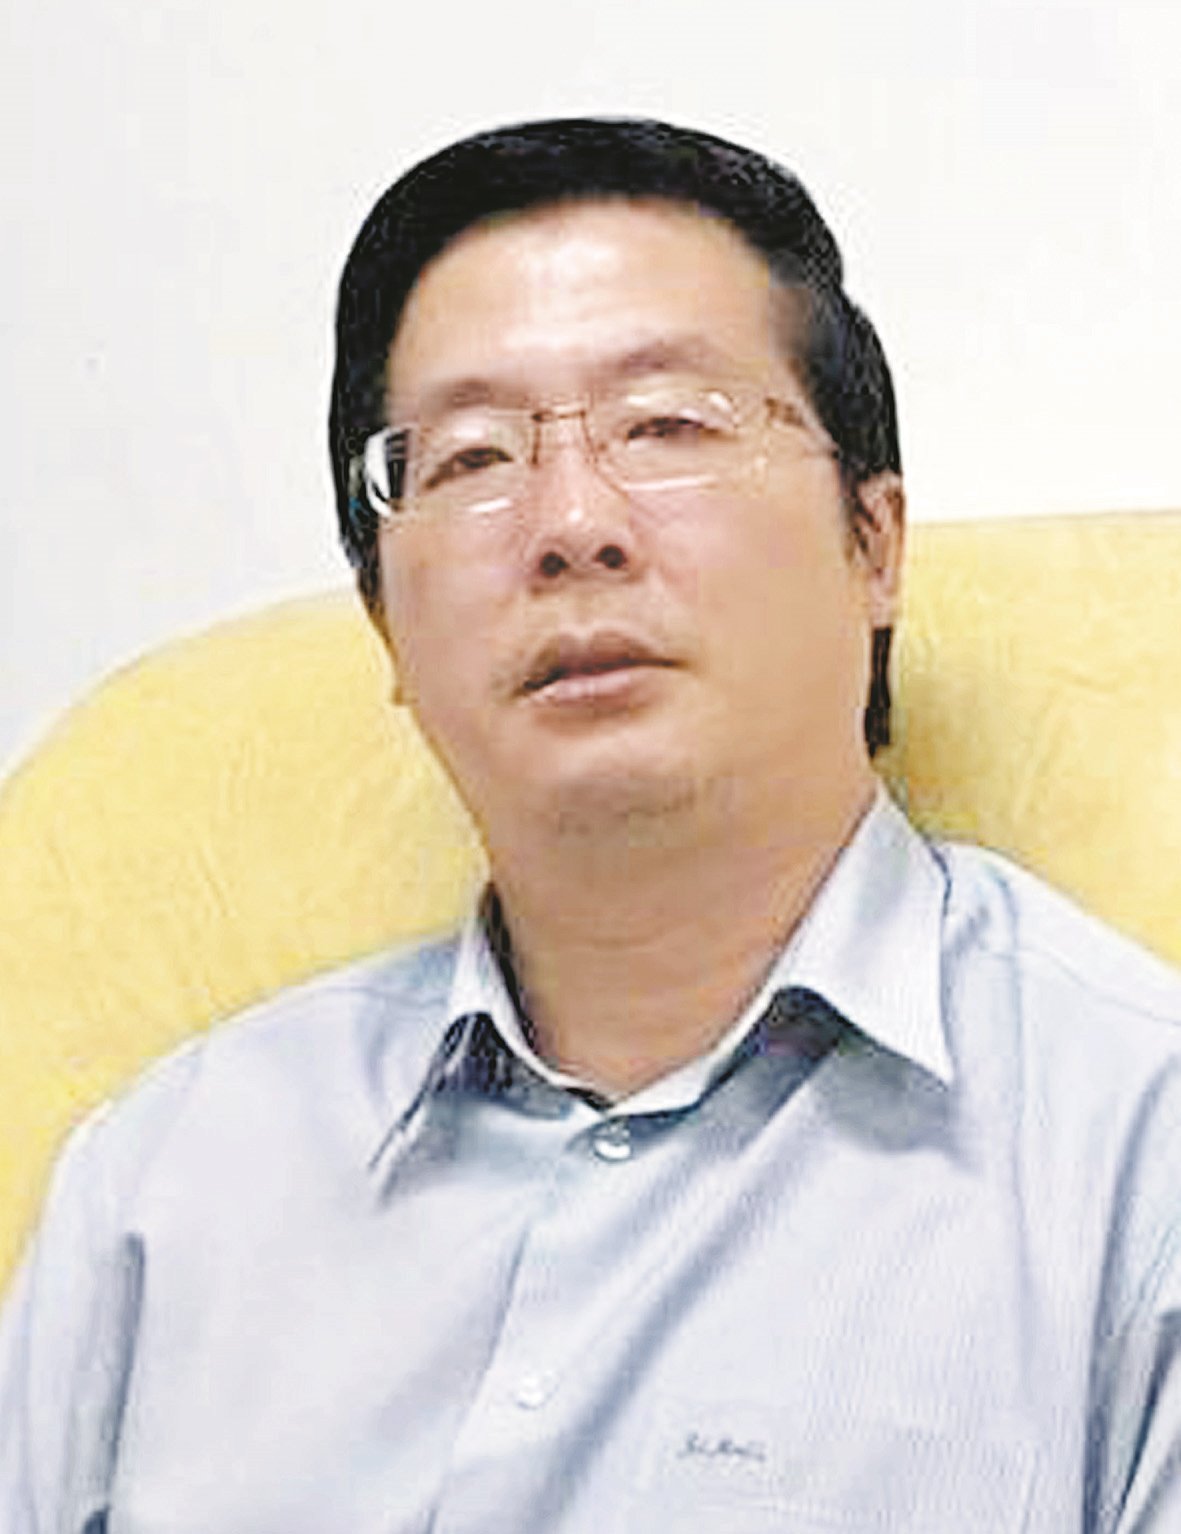 政治评论员潘永强博士